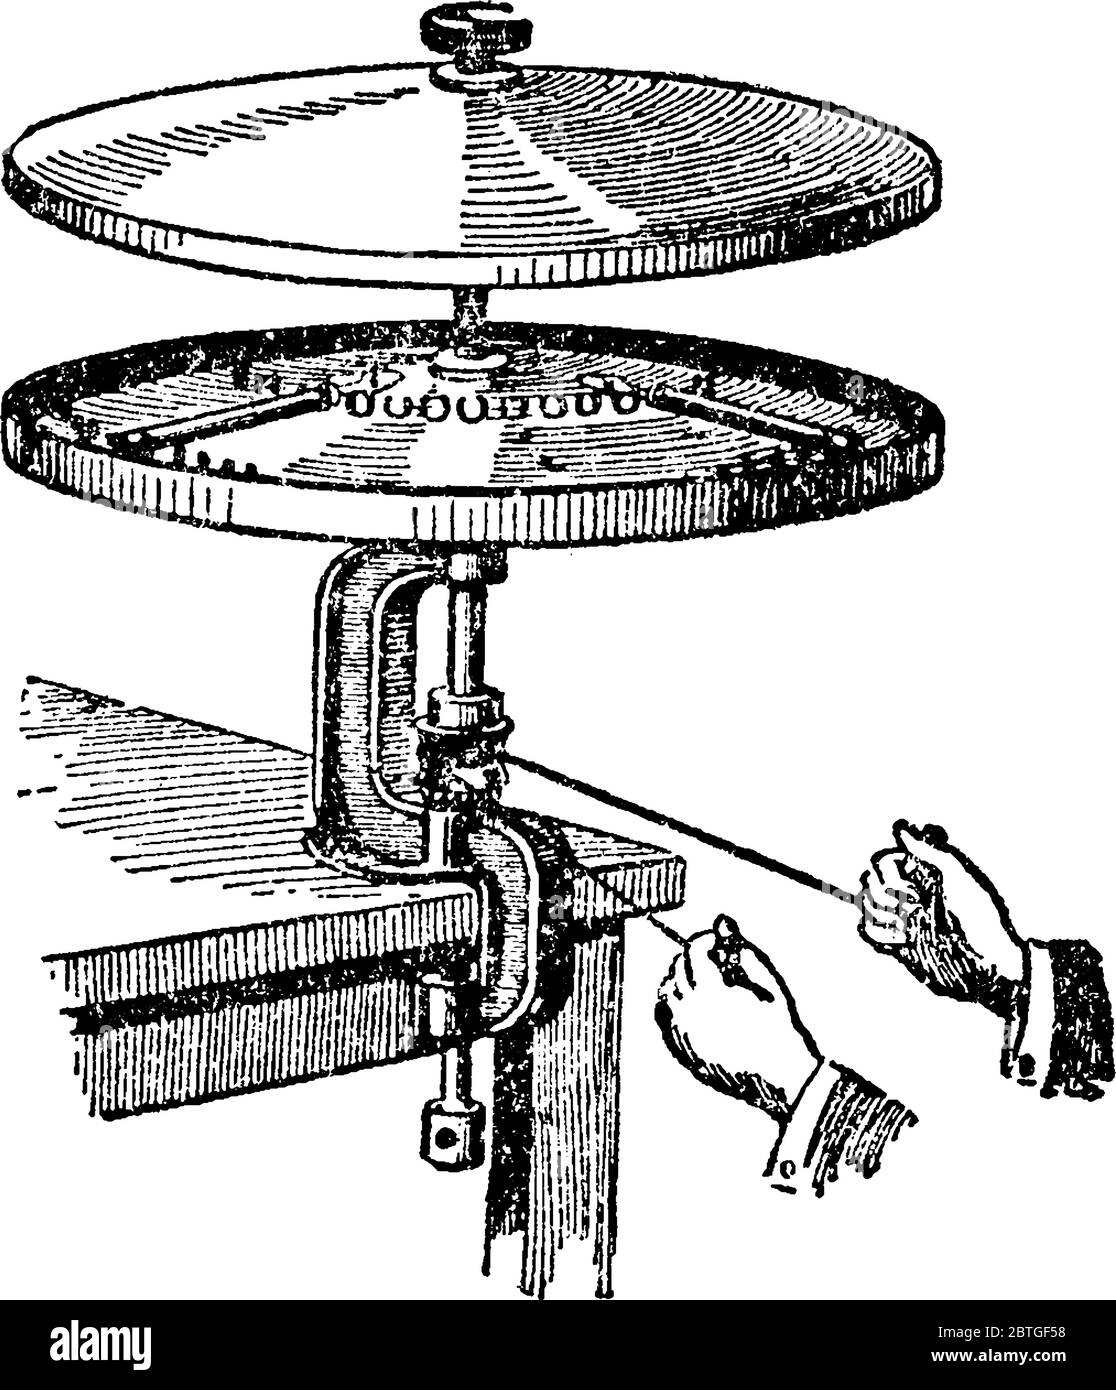 Ein Messgerät zur Messung des Fettgehalts in Milch oder Milchprodukten, zur Erstellung einer Vintage-Zeichnung oder zur Gravur. Stock Vektor